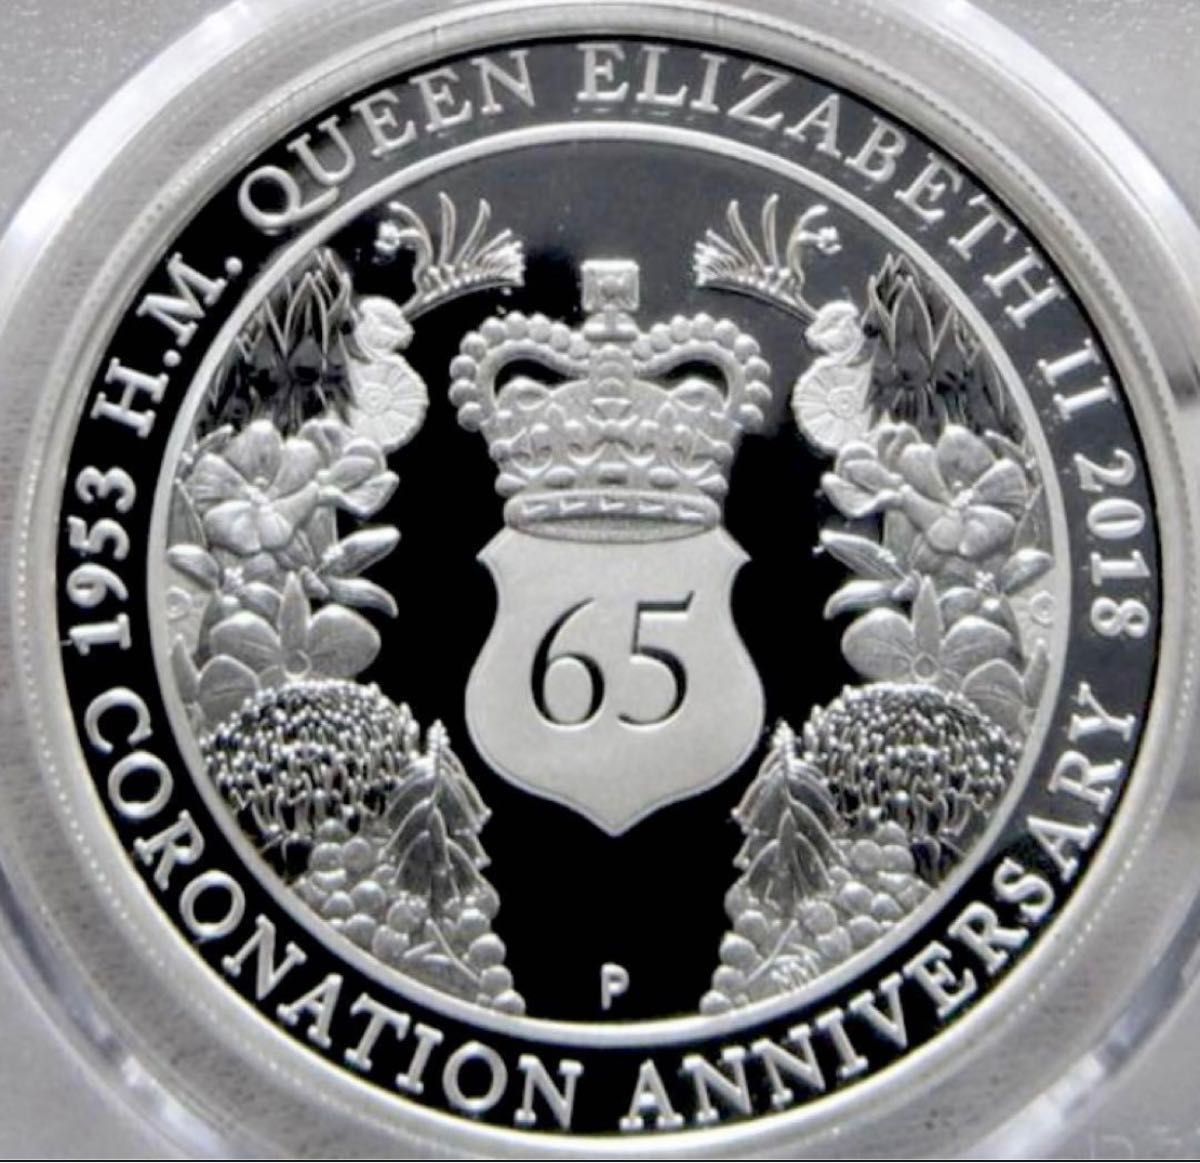 【最高鑑定 】2018 オーストラリア 銀貨 1ドルエリザベス2世 戴冠65周年記念PCGS PR70 ディープカメオ